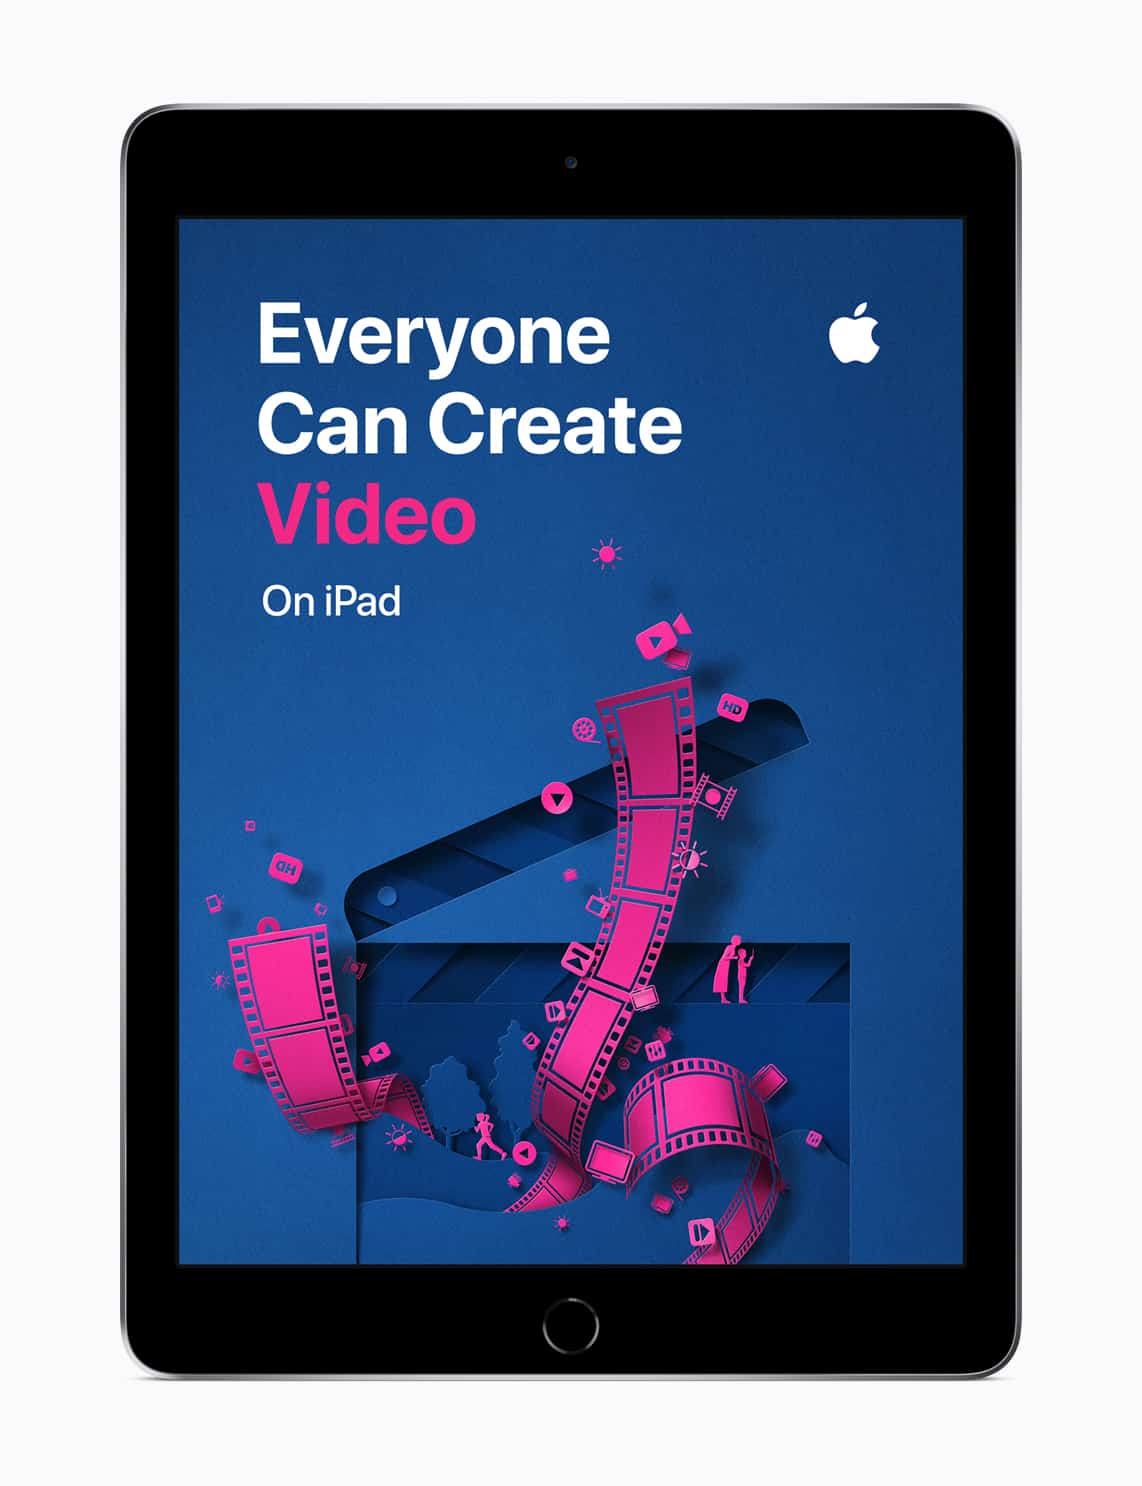 Apple iPad Everyone Can Create video screen 09262018